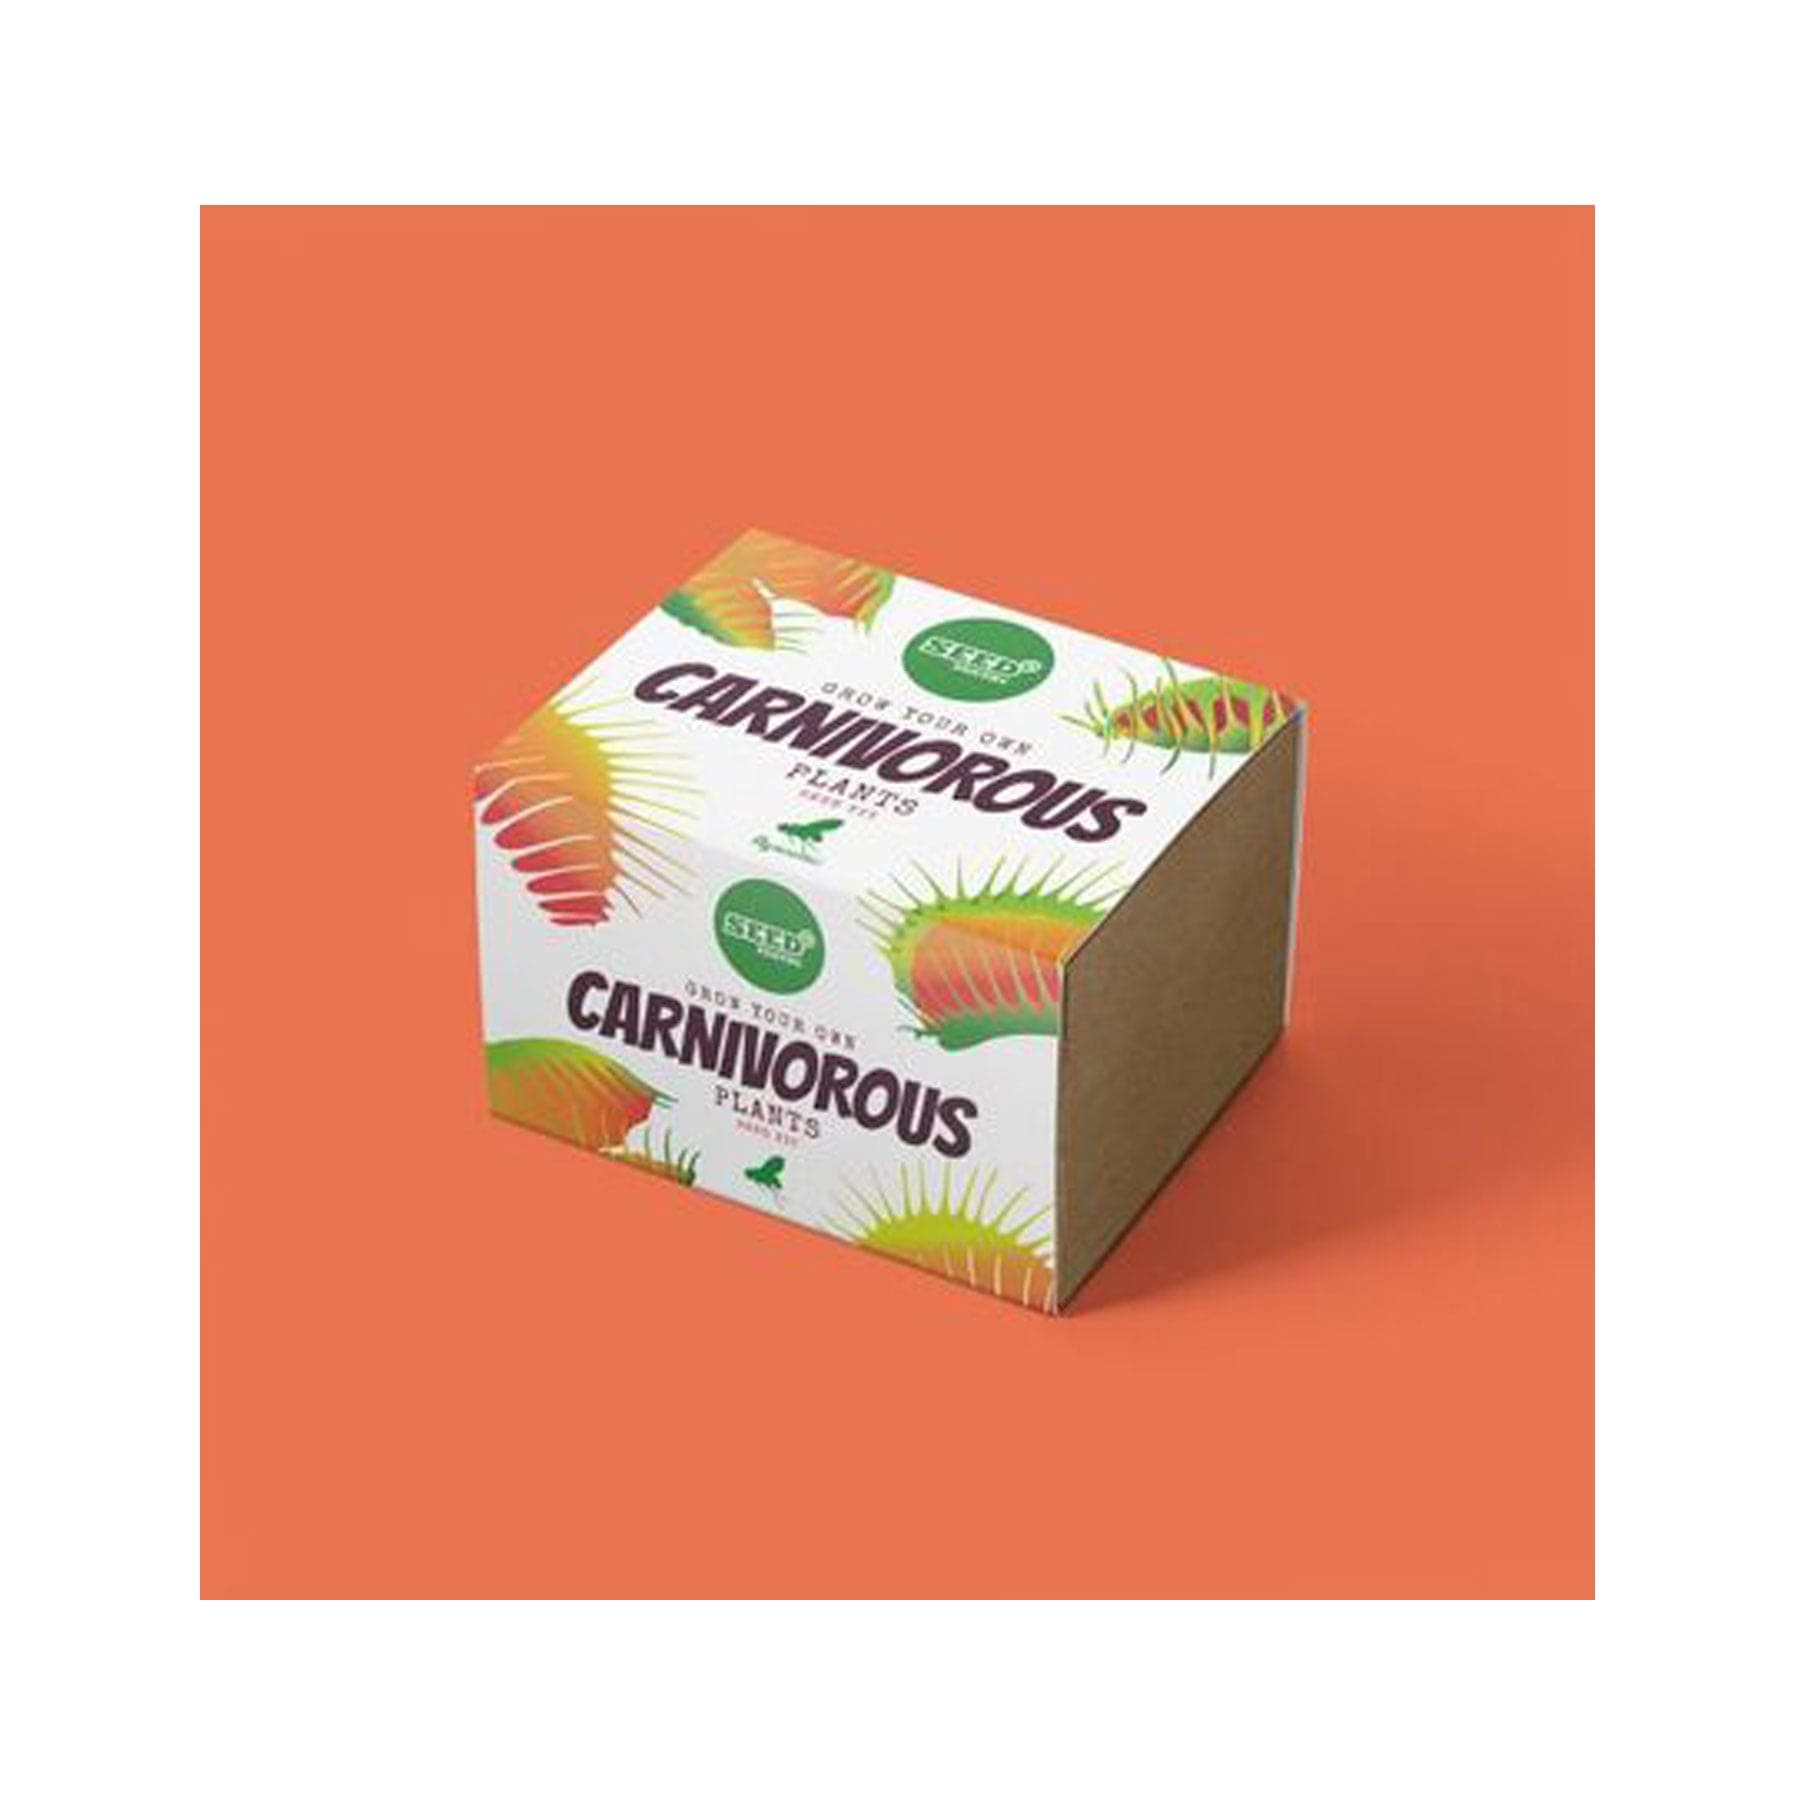 Carnivorous seed kit